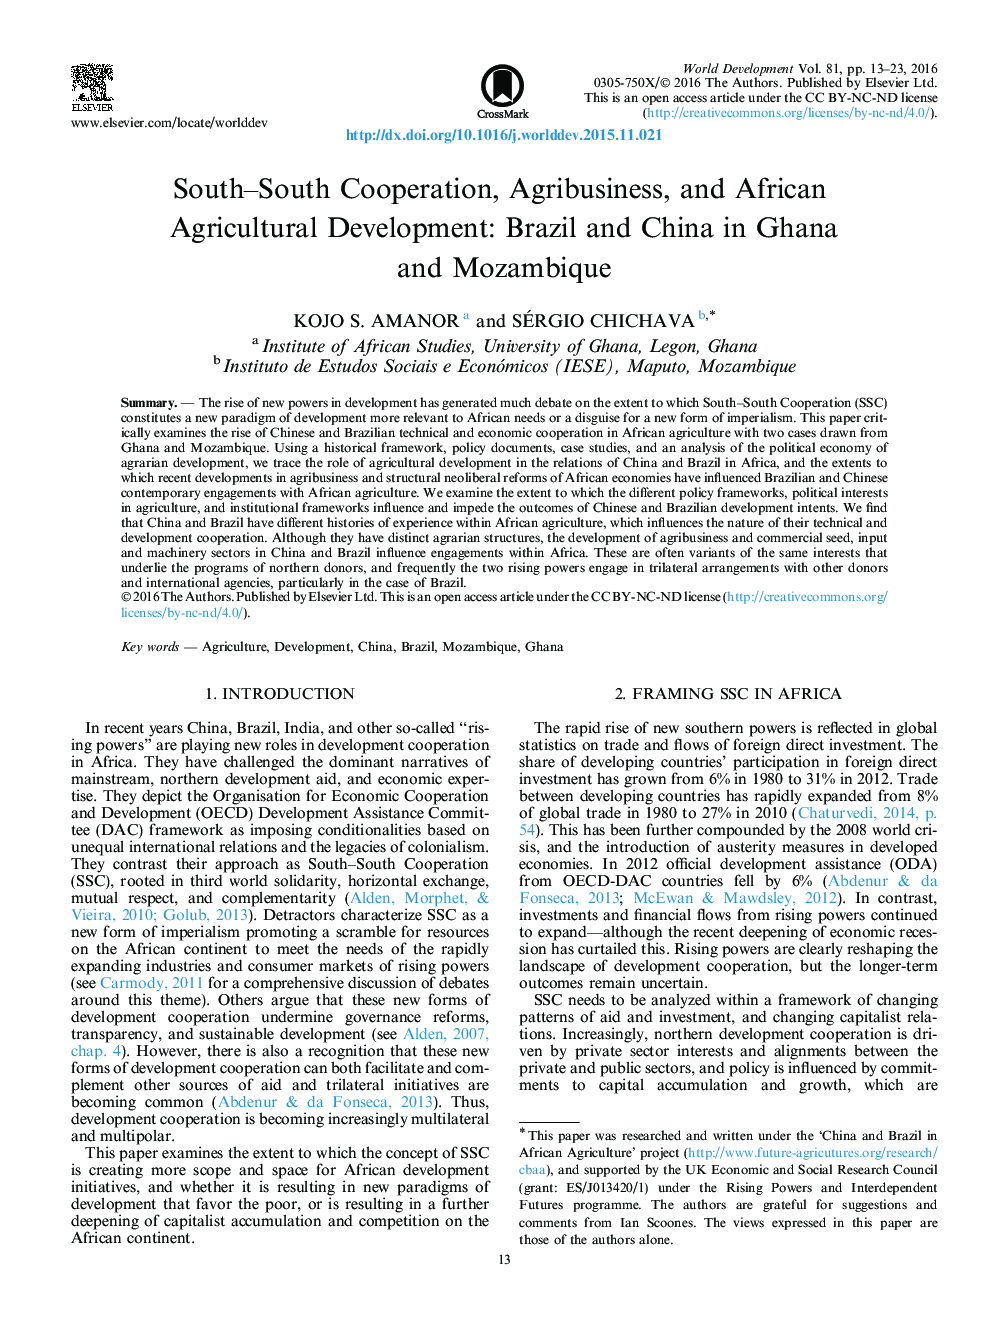 همکاری جنوب و جنوب، محصولات کشاورزی و توسعه کشاورزی آفریقا: برزیل و چین در غنا و موزامبیک